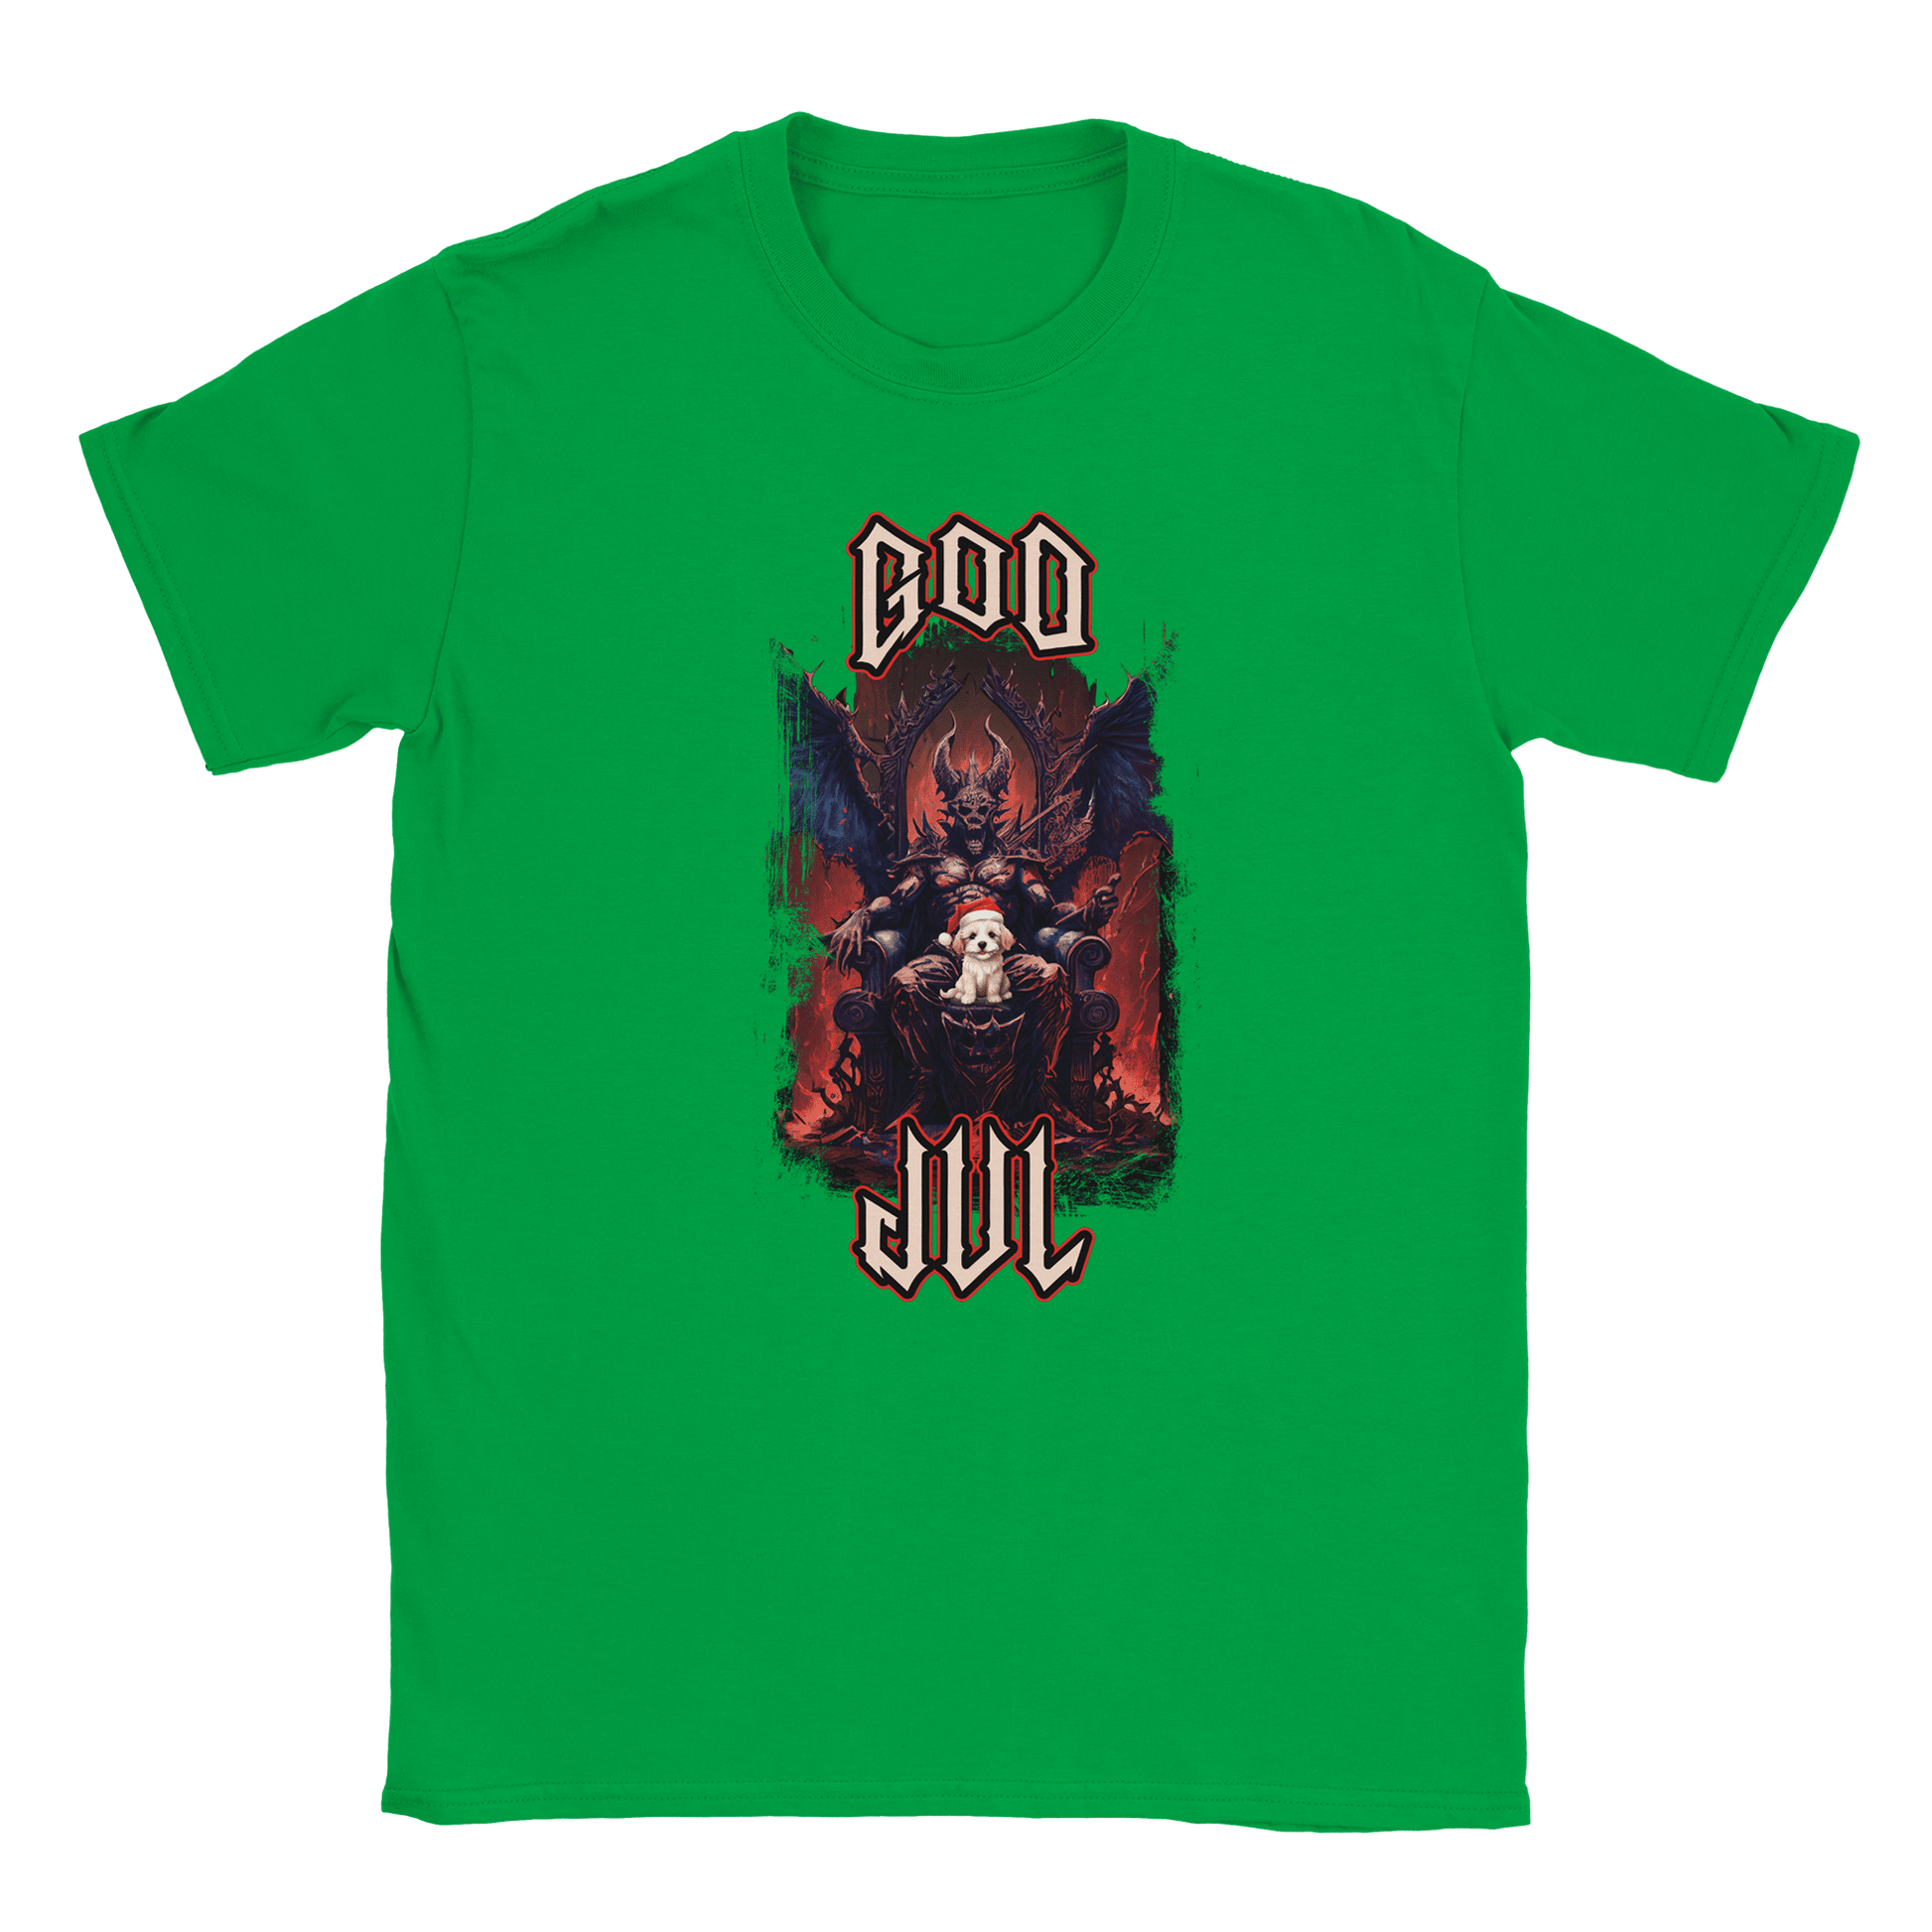 God Jul häftig hundvalp - T-shirt Grön